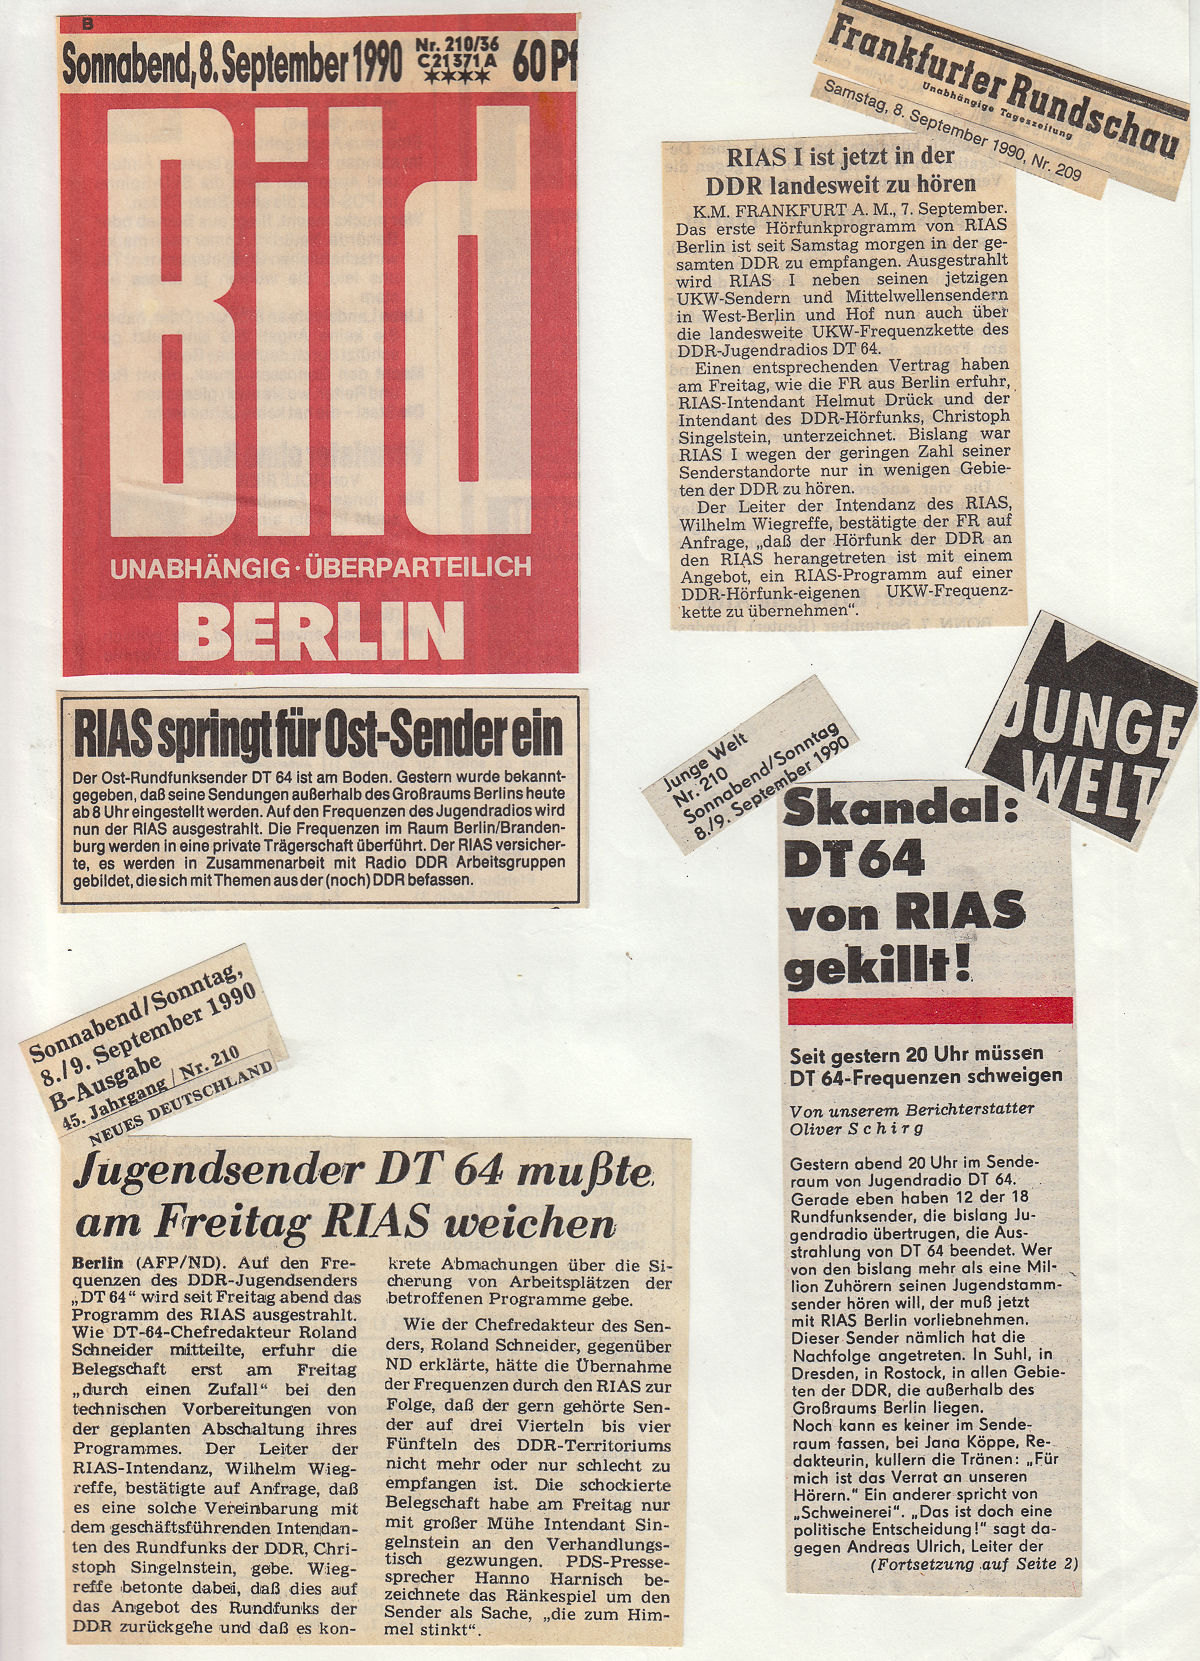 Tageszeitungen am Morgen danach (08.09.1990)